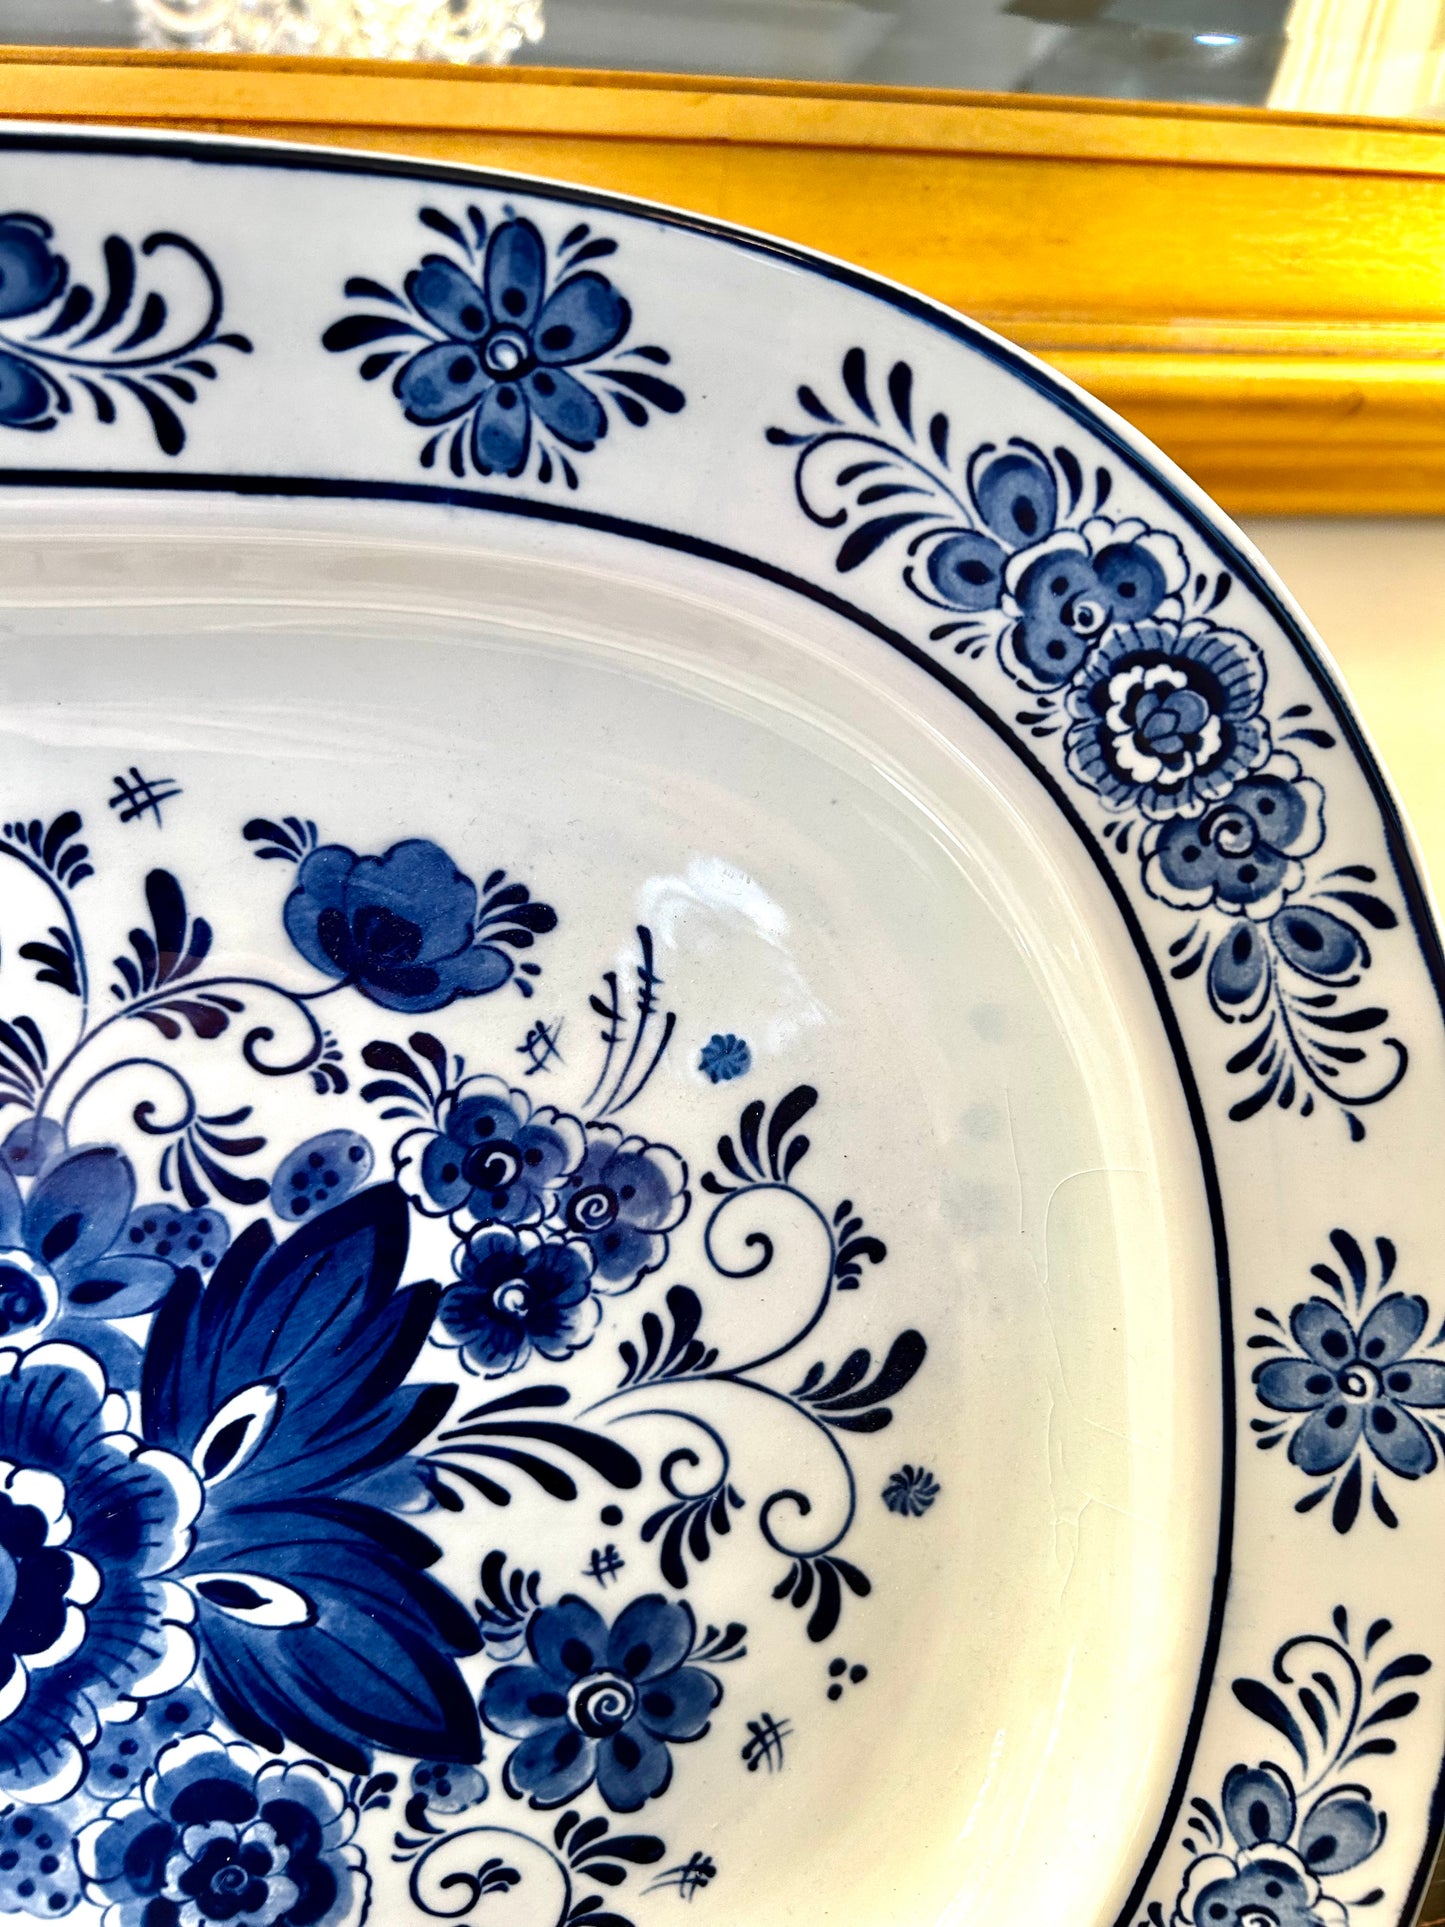 Vintage blue & white chinoiserie extra large botanical platter, 18.5 x 14